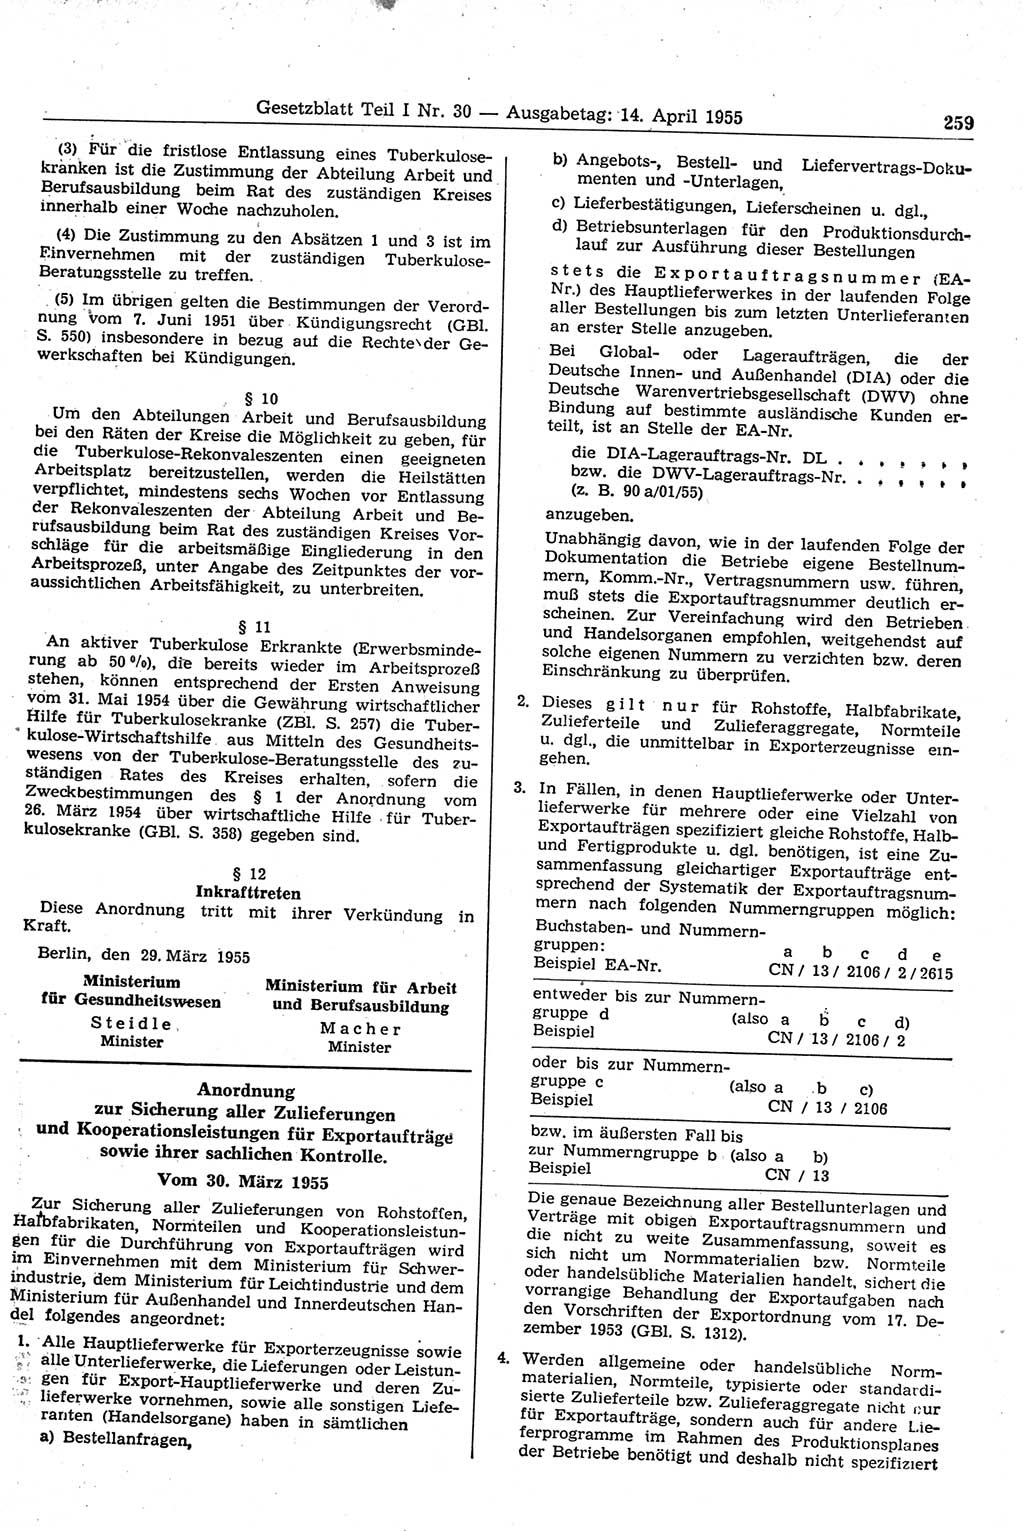 Gesetzblatt (GBl.) der Deutschen Demokratischen Republik (DDR) Teil Ⅰ 1955, Seite 259 (GBl. DDR Ⅰ 1955, S. 259)